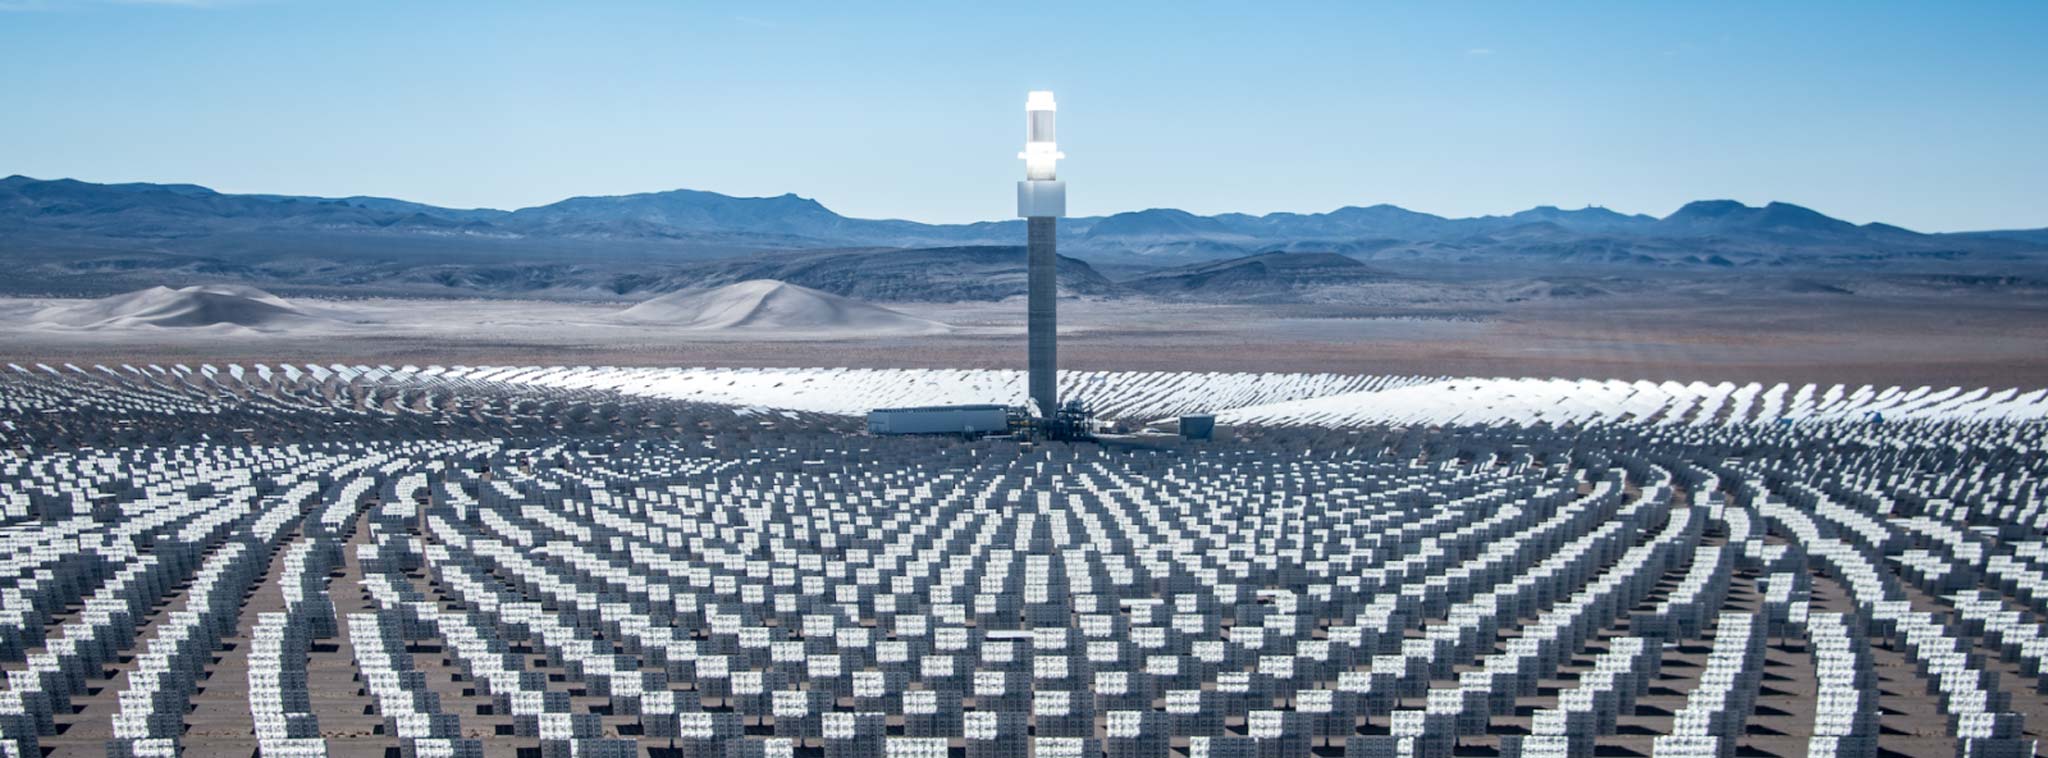 Xây cánh đồng năng lượng Mặt Trời tại sa mạc Sahara để cấp điện cho châu Âu